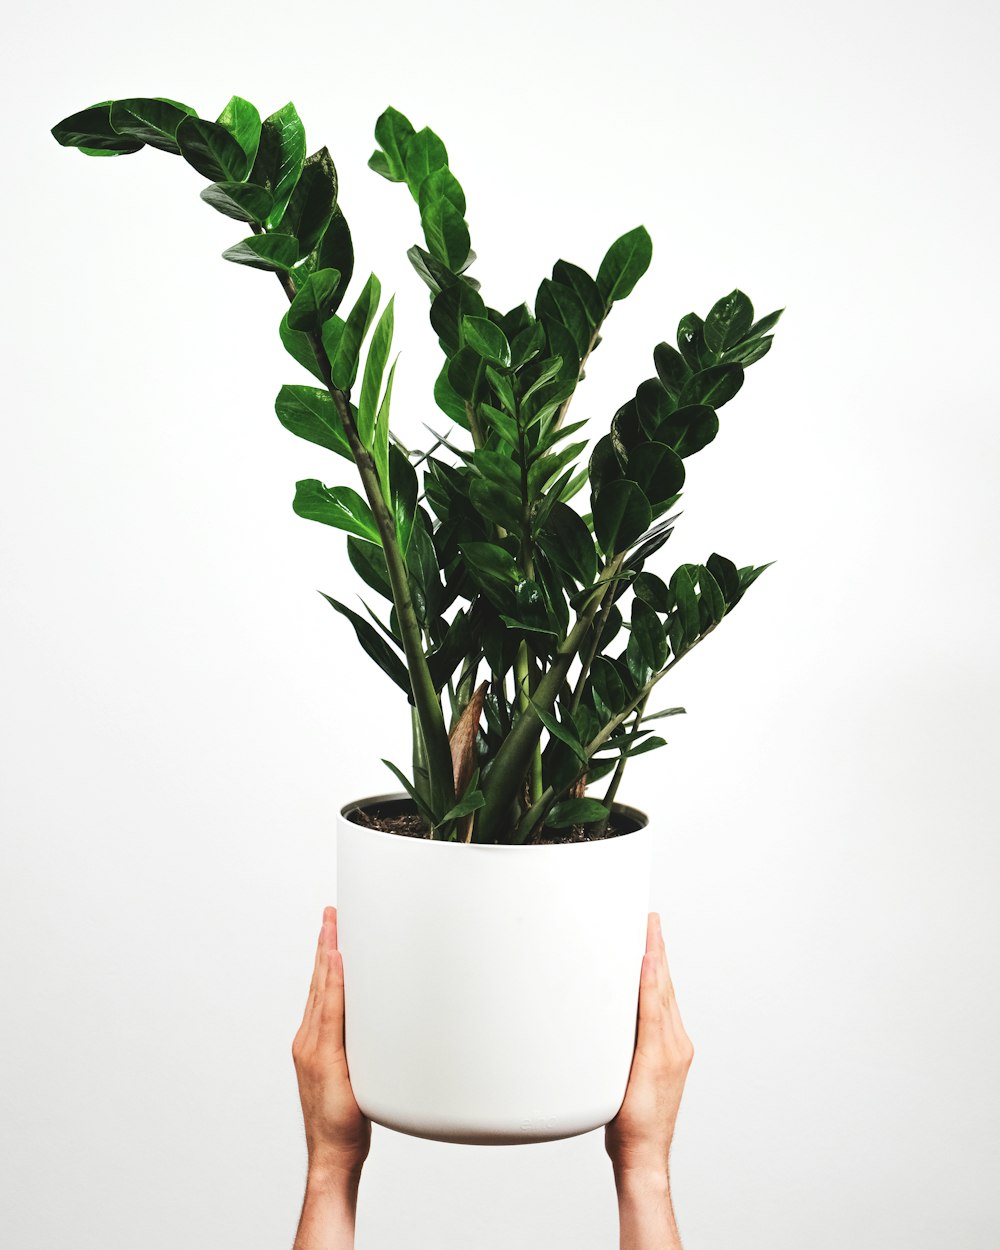 une personne tenant une plante en pot dans ses mains